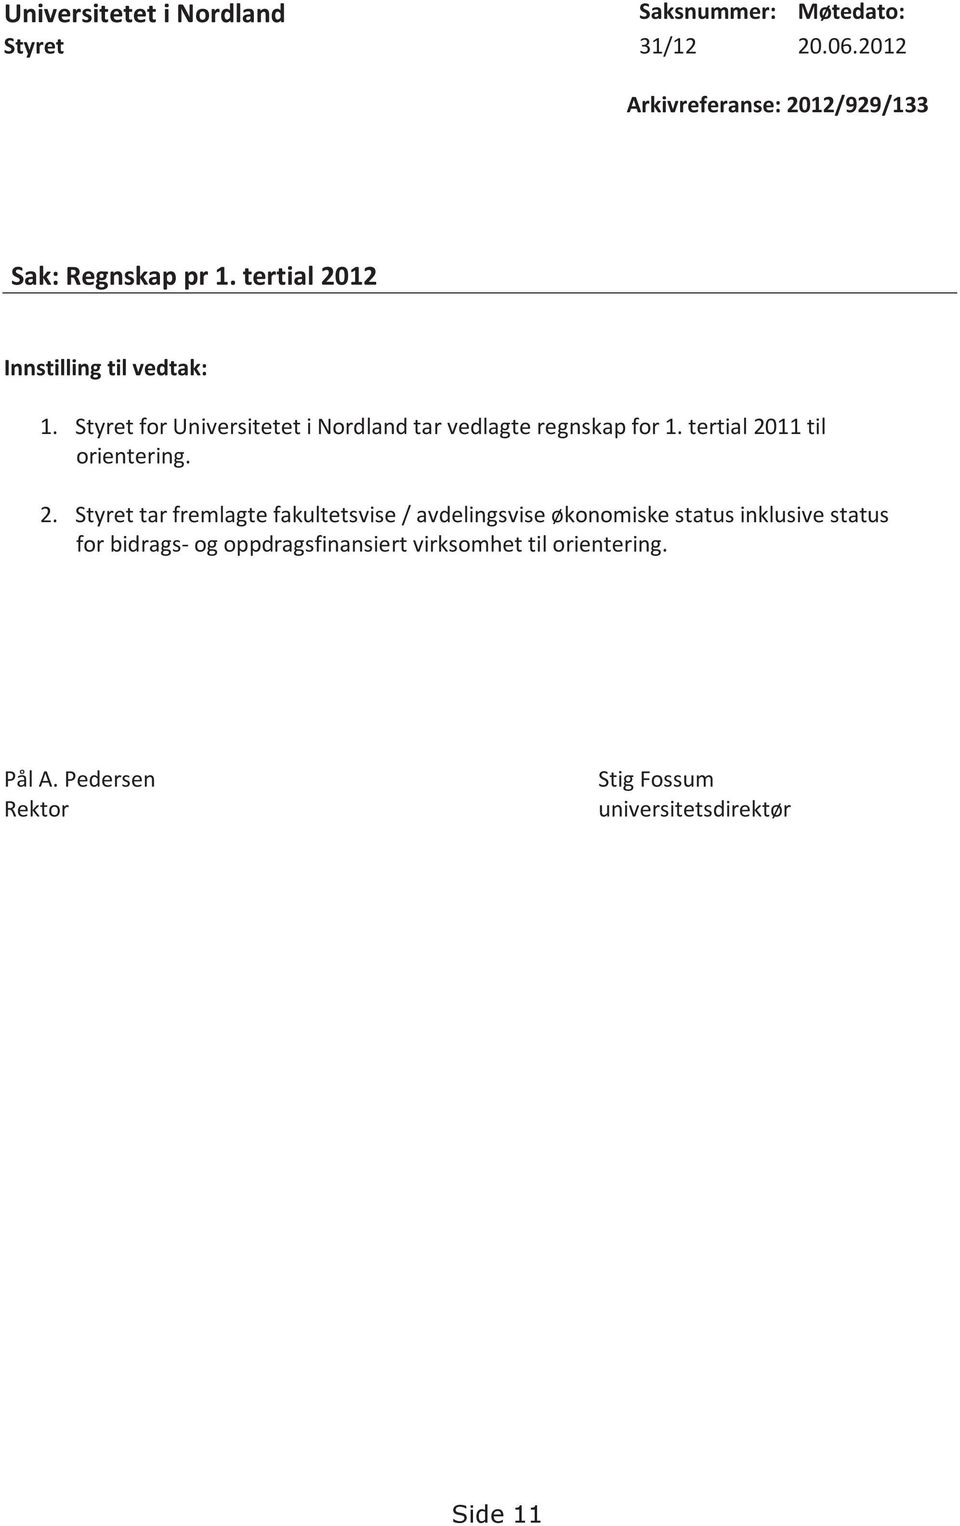 Styret for Universitetet i Nordland tar vedlagte regnskap for 1. tertial 20